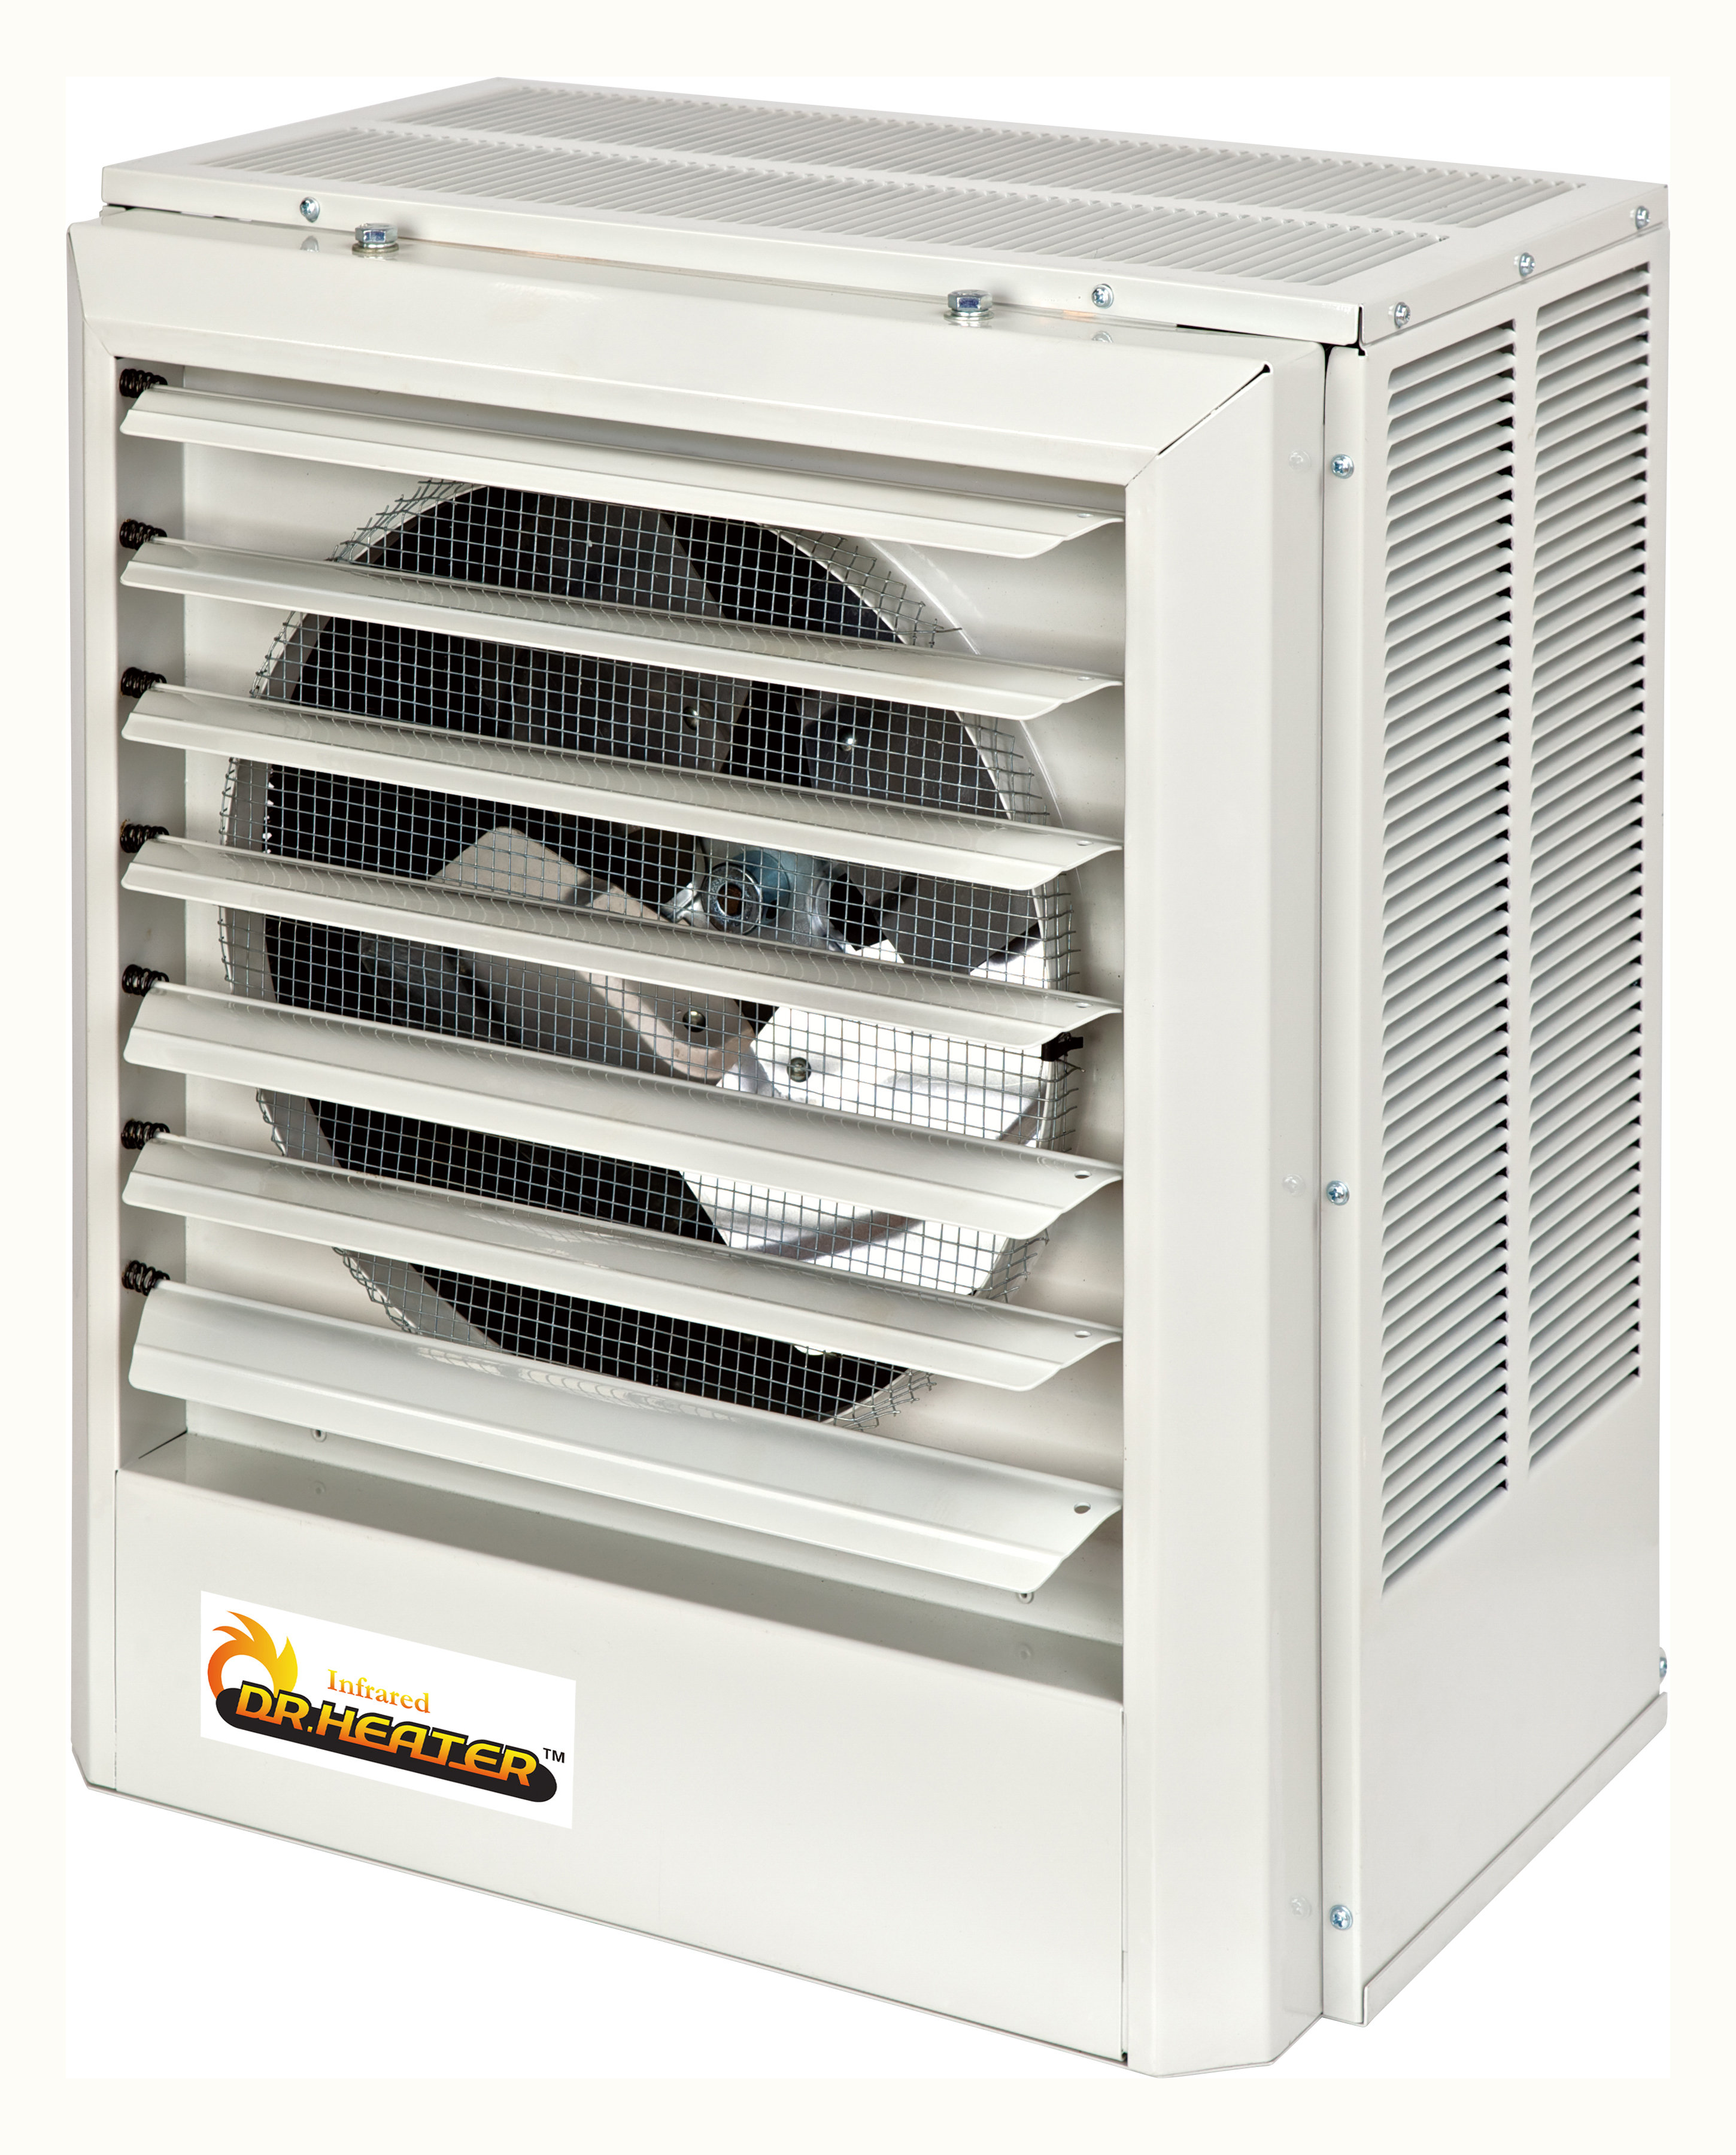 Dr Infrared Heater 38300 Btu Electric Space Heater 